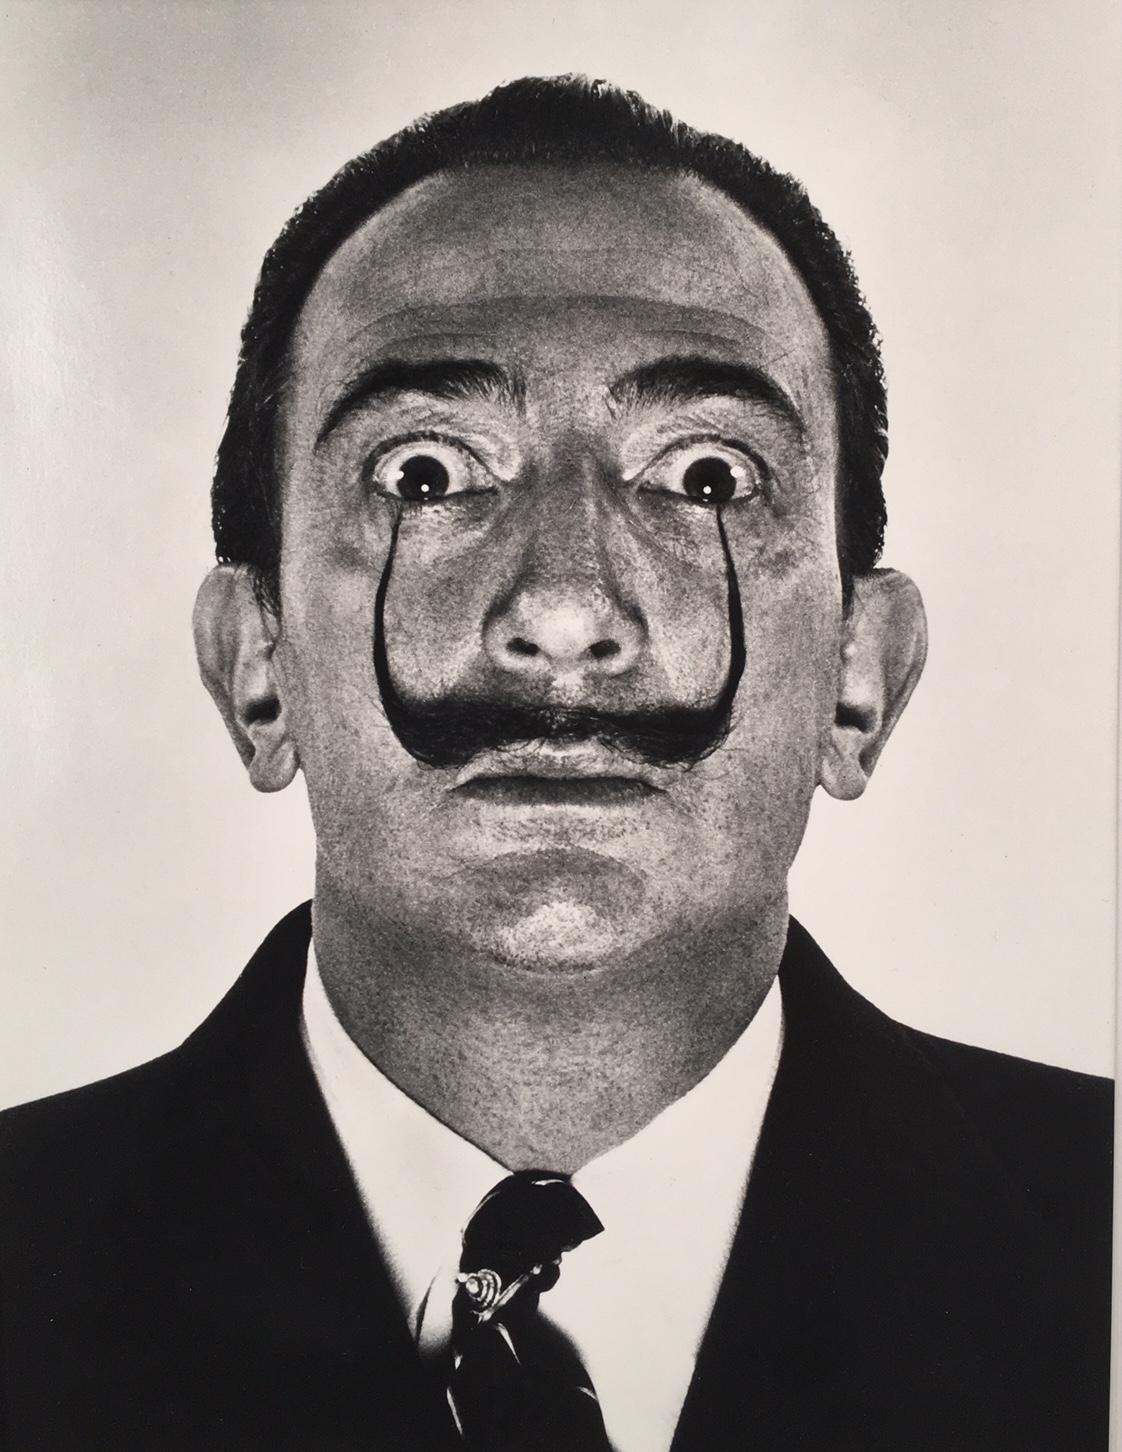 Salvador Dali and Philippe Halsman Portrait Photograph - Dali's Mustache